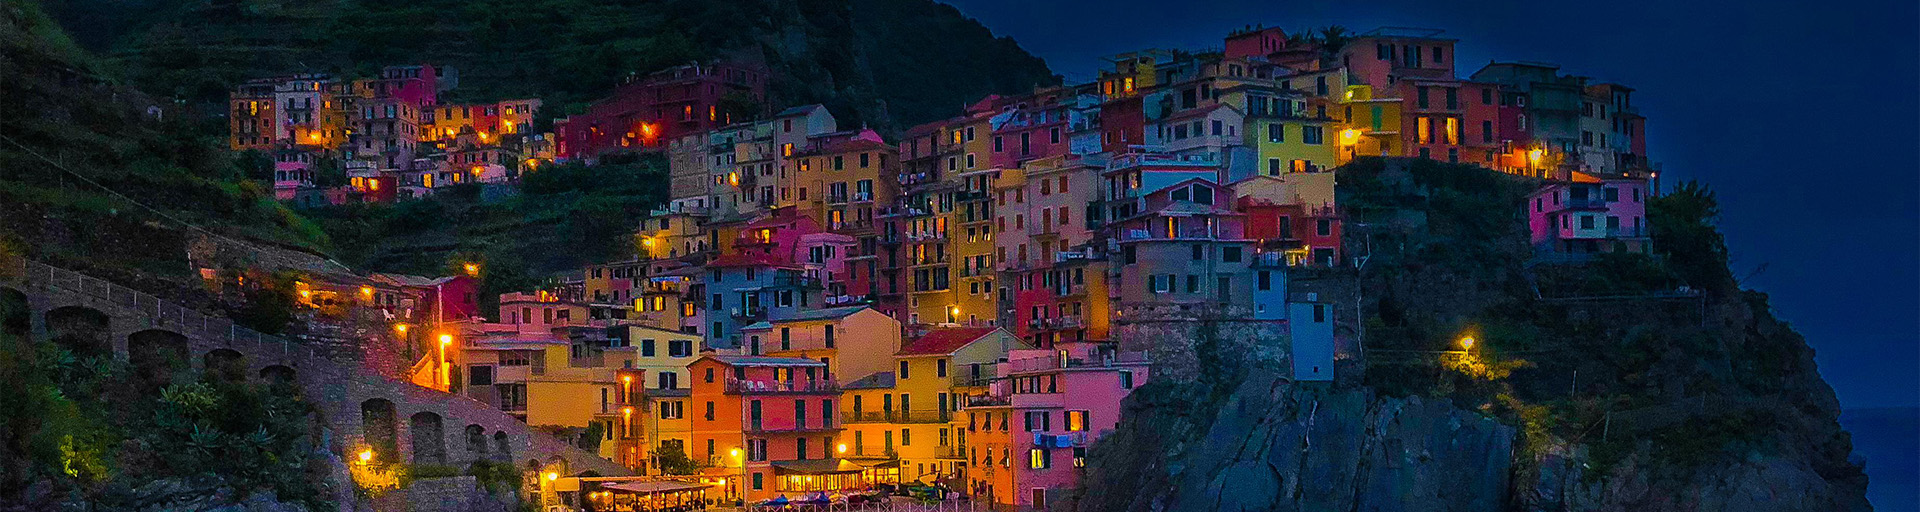 Cinque Terre, Italy at night